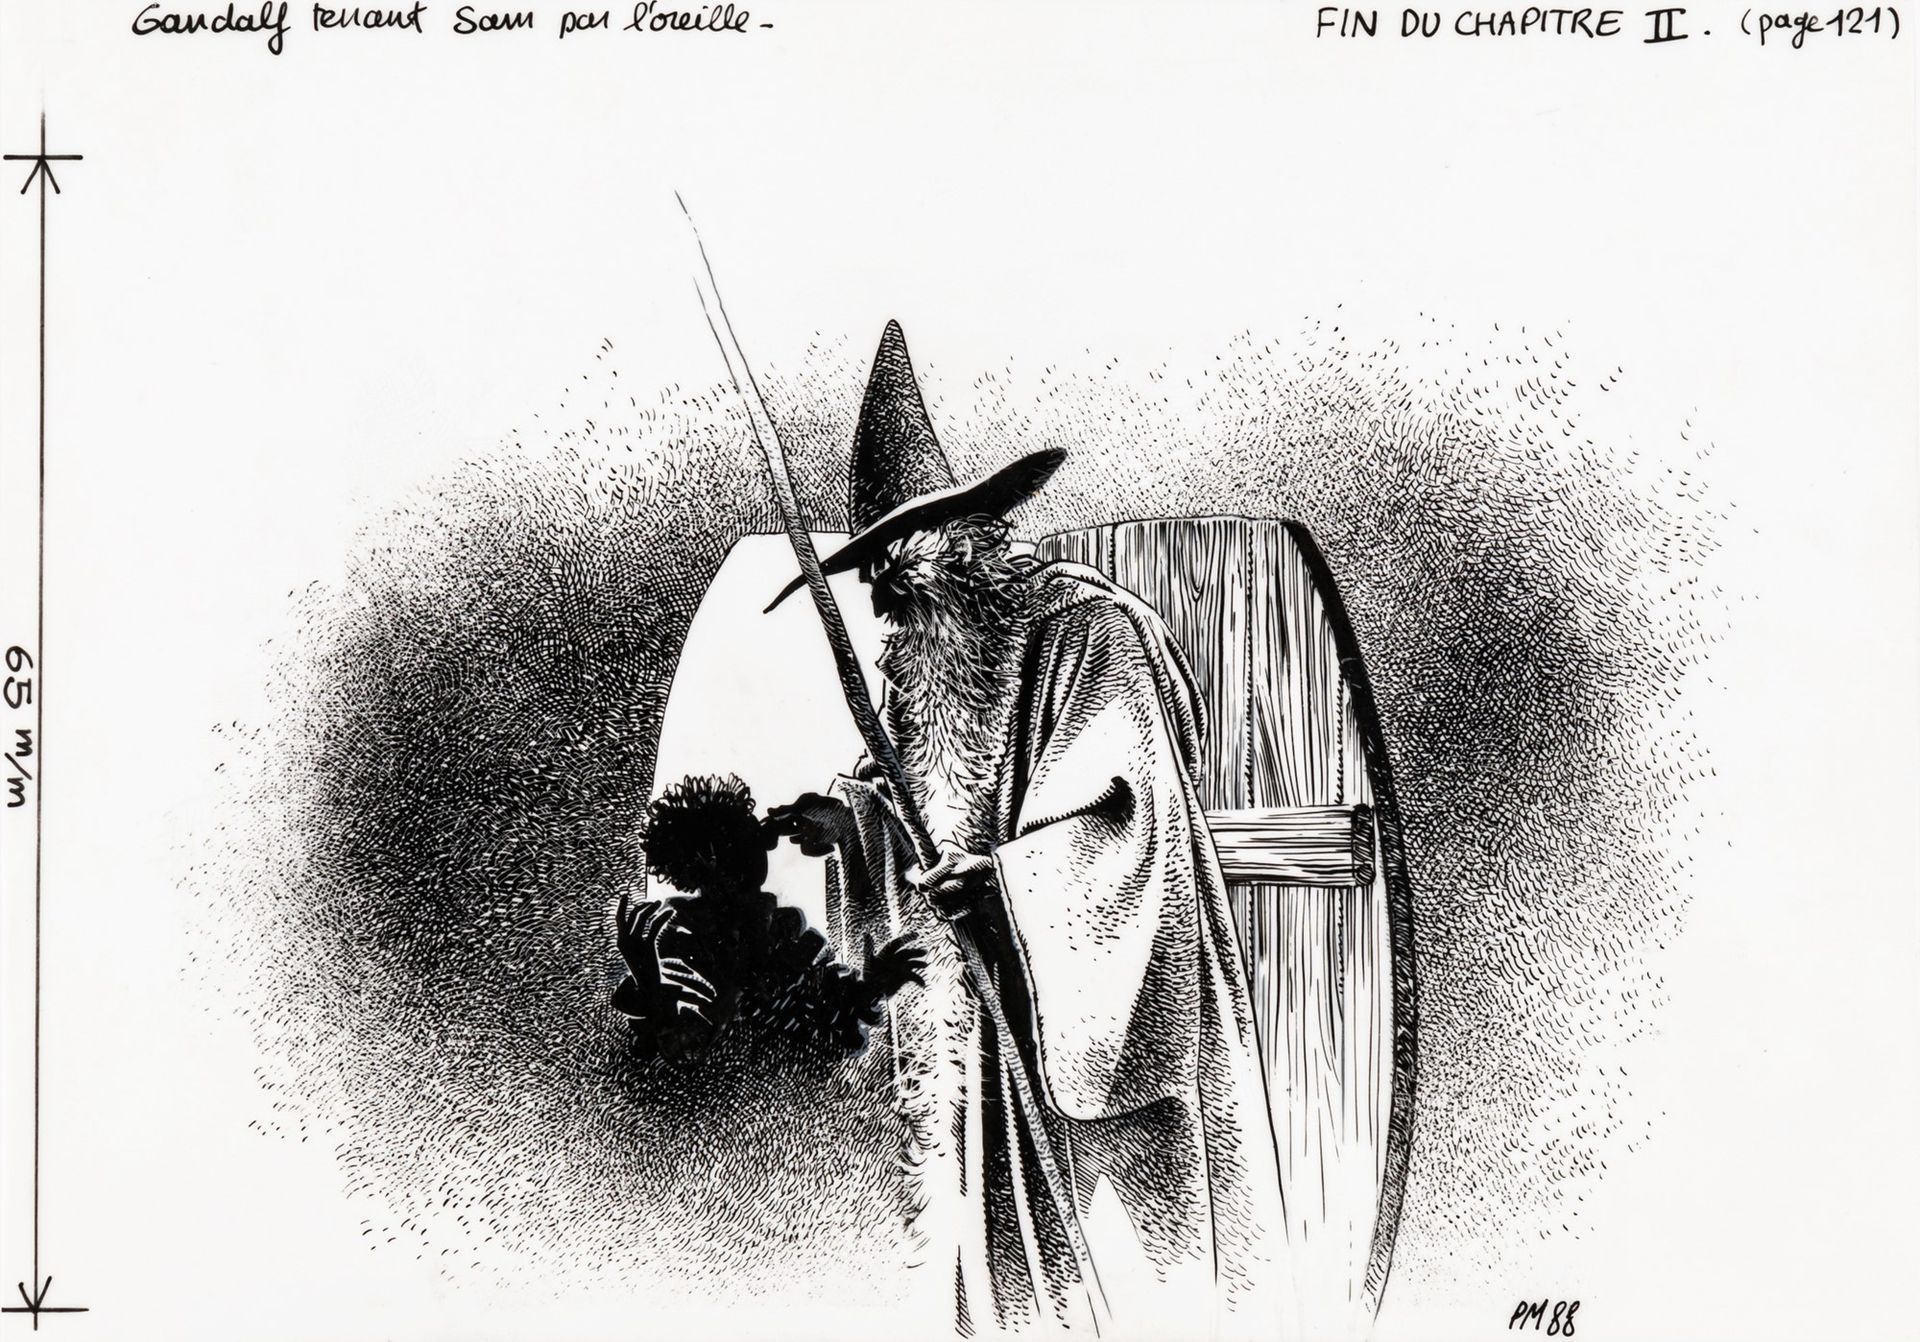 Philippe Munch Gandalf hält Sam am Ohr, 1988

Tinte auf Transparentpapier
21 x 1&hellip;